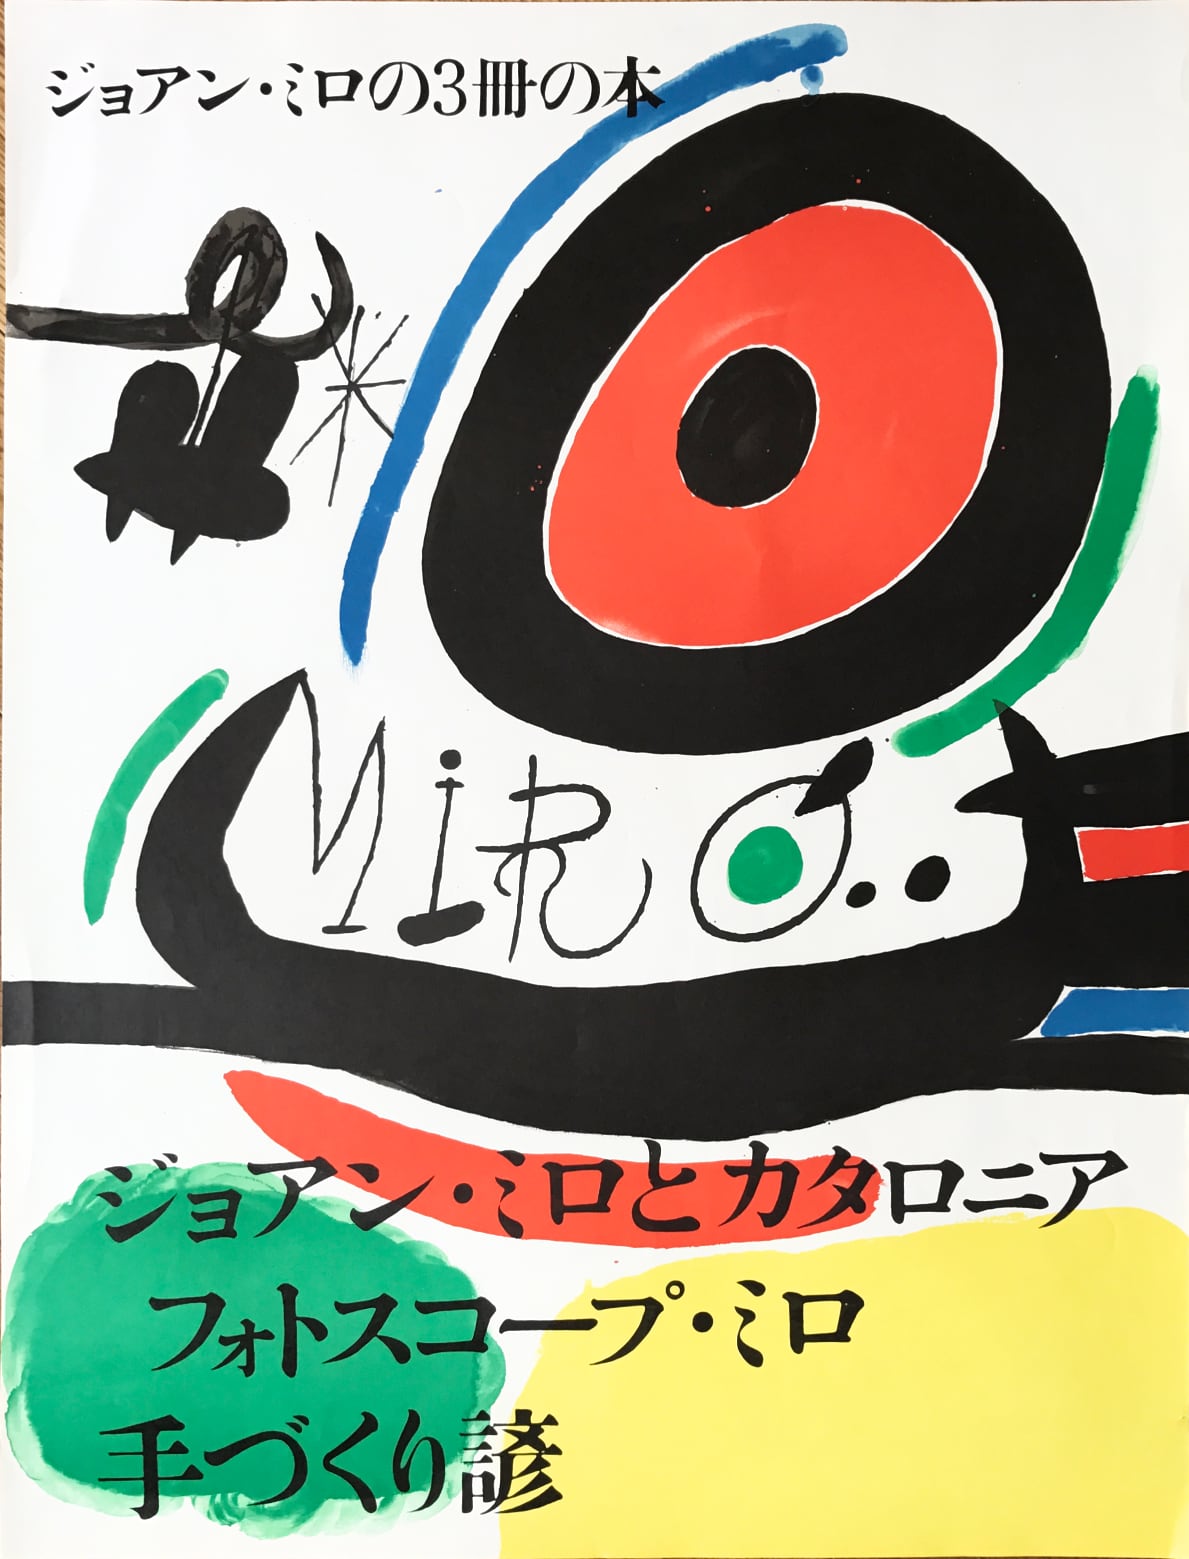 Joan Miro - Affiche pour l’ exposition de 3 livres de Joan Miro a Osaka